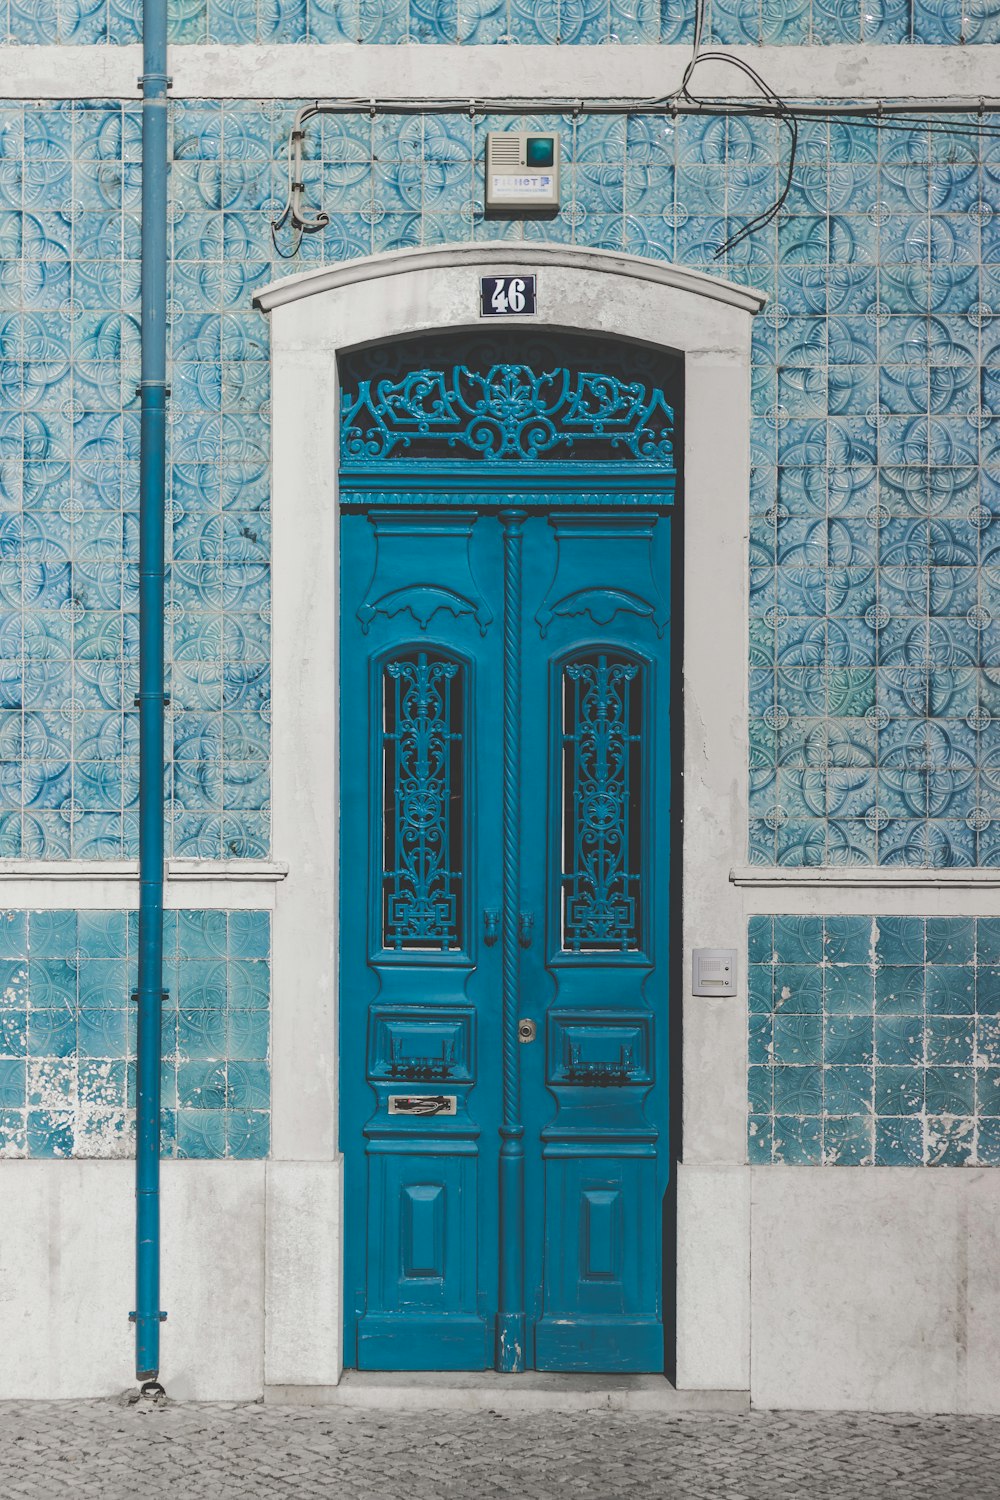 puerta de madera azul cerrada con 46 signos